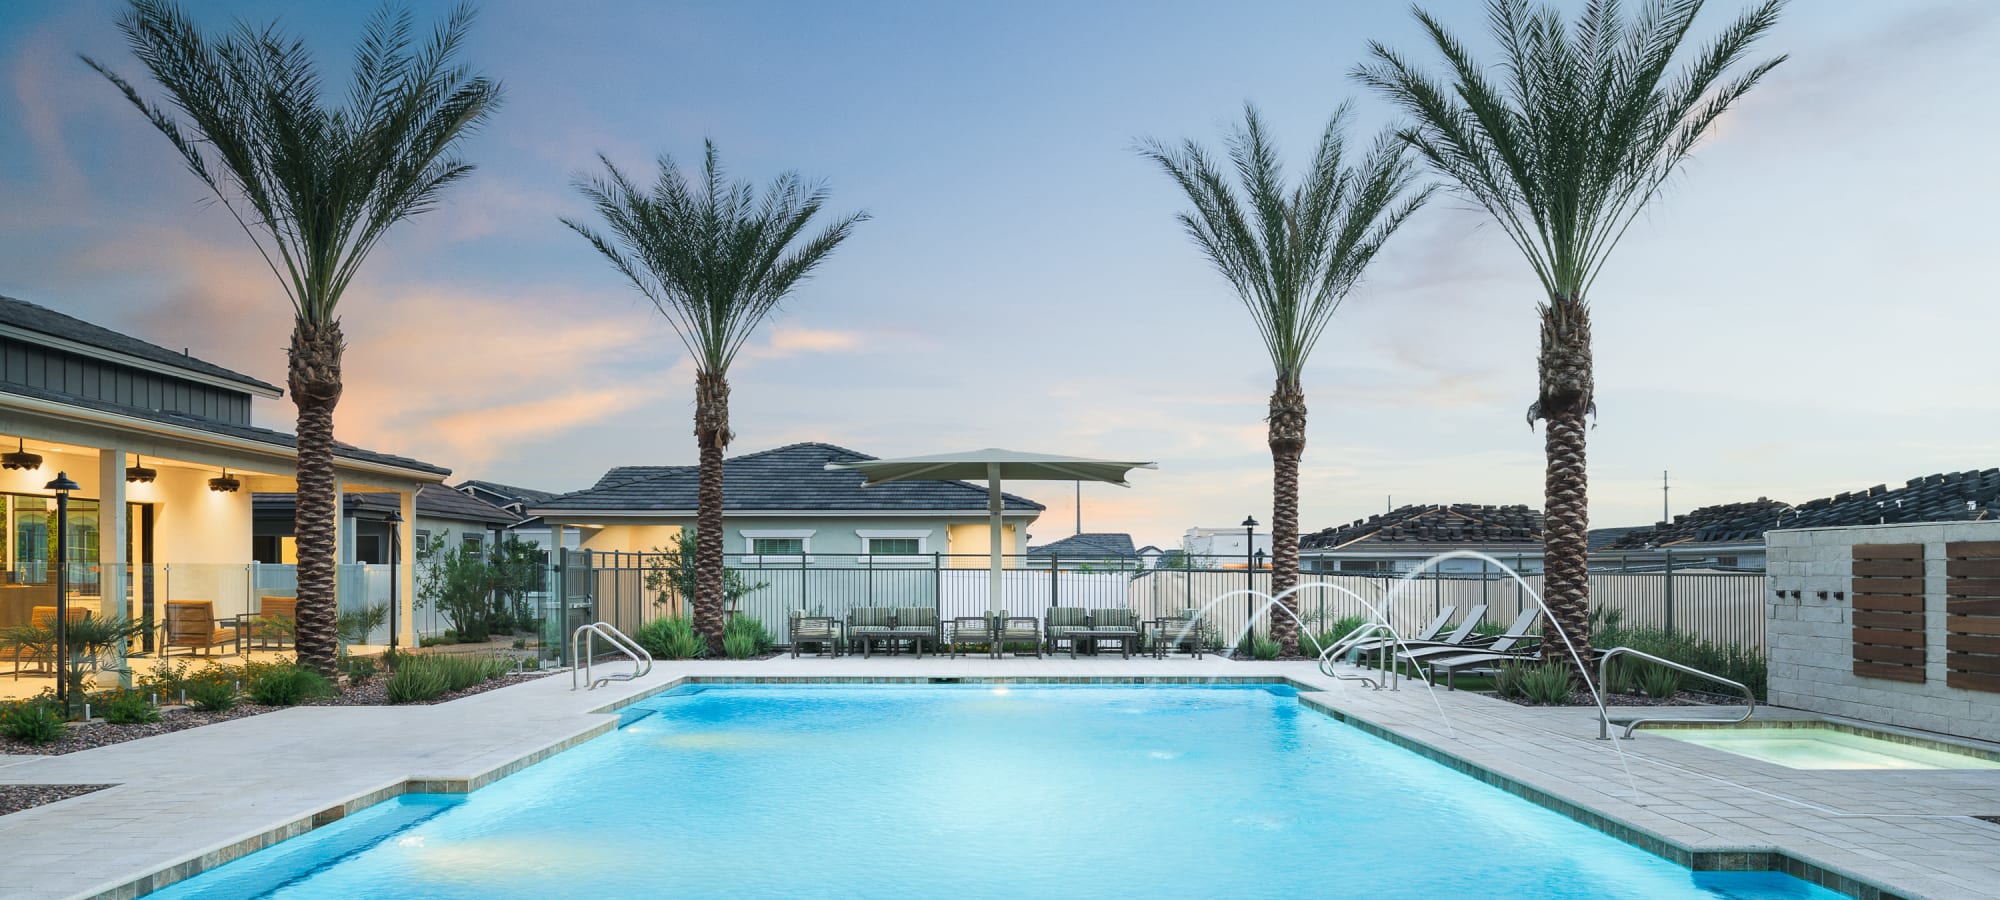 Resort-style pool at Peralta Vista in Mesa, Arizona